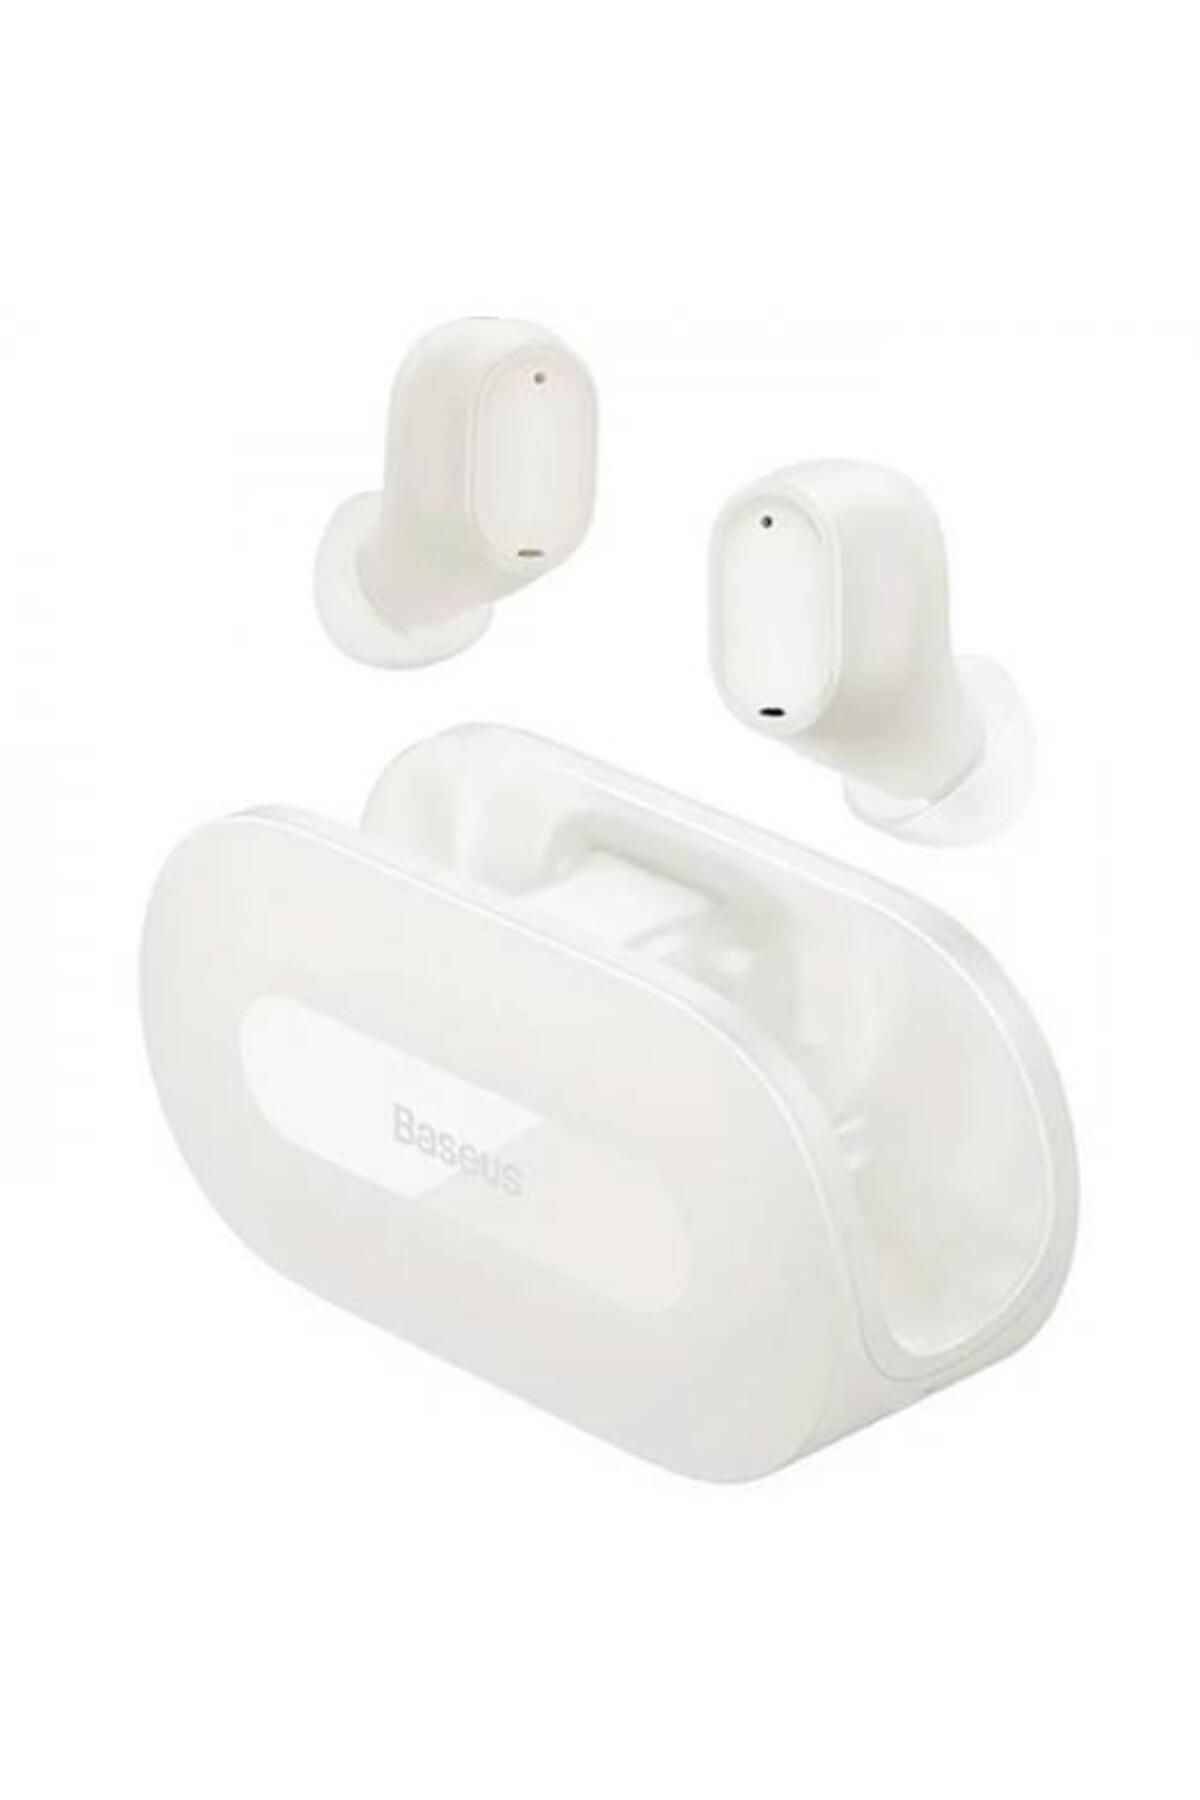 Baseus Bt5.3v 300mah Şarjlı Mikrofonlu Bluetooth Kulakiçi Kulaklık, Hifi Bas Destekli, Su Geçirmez